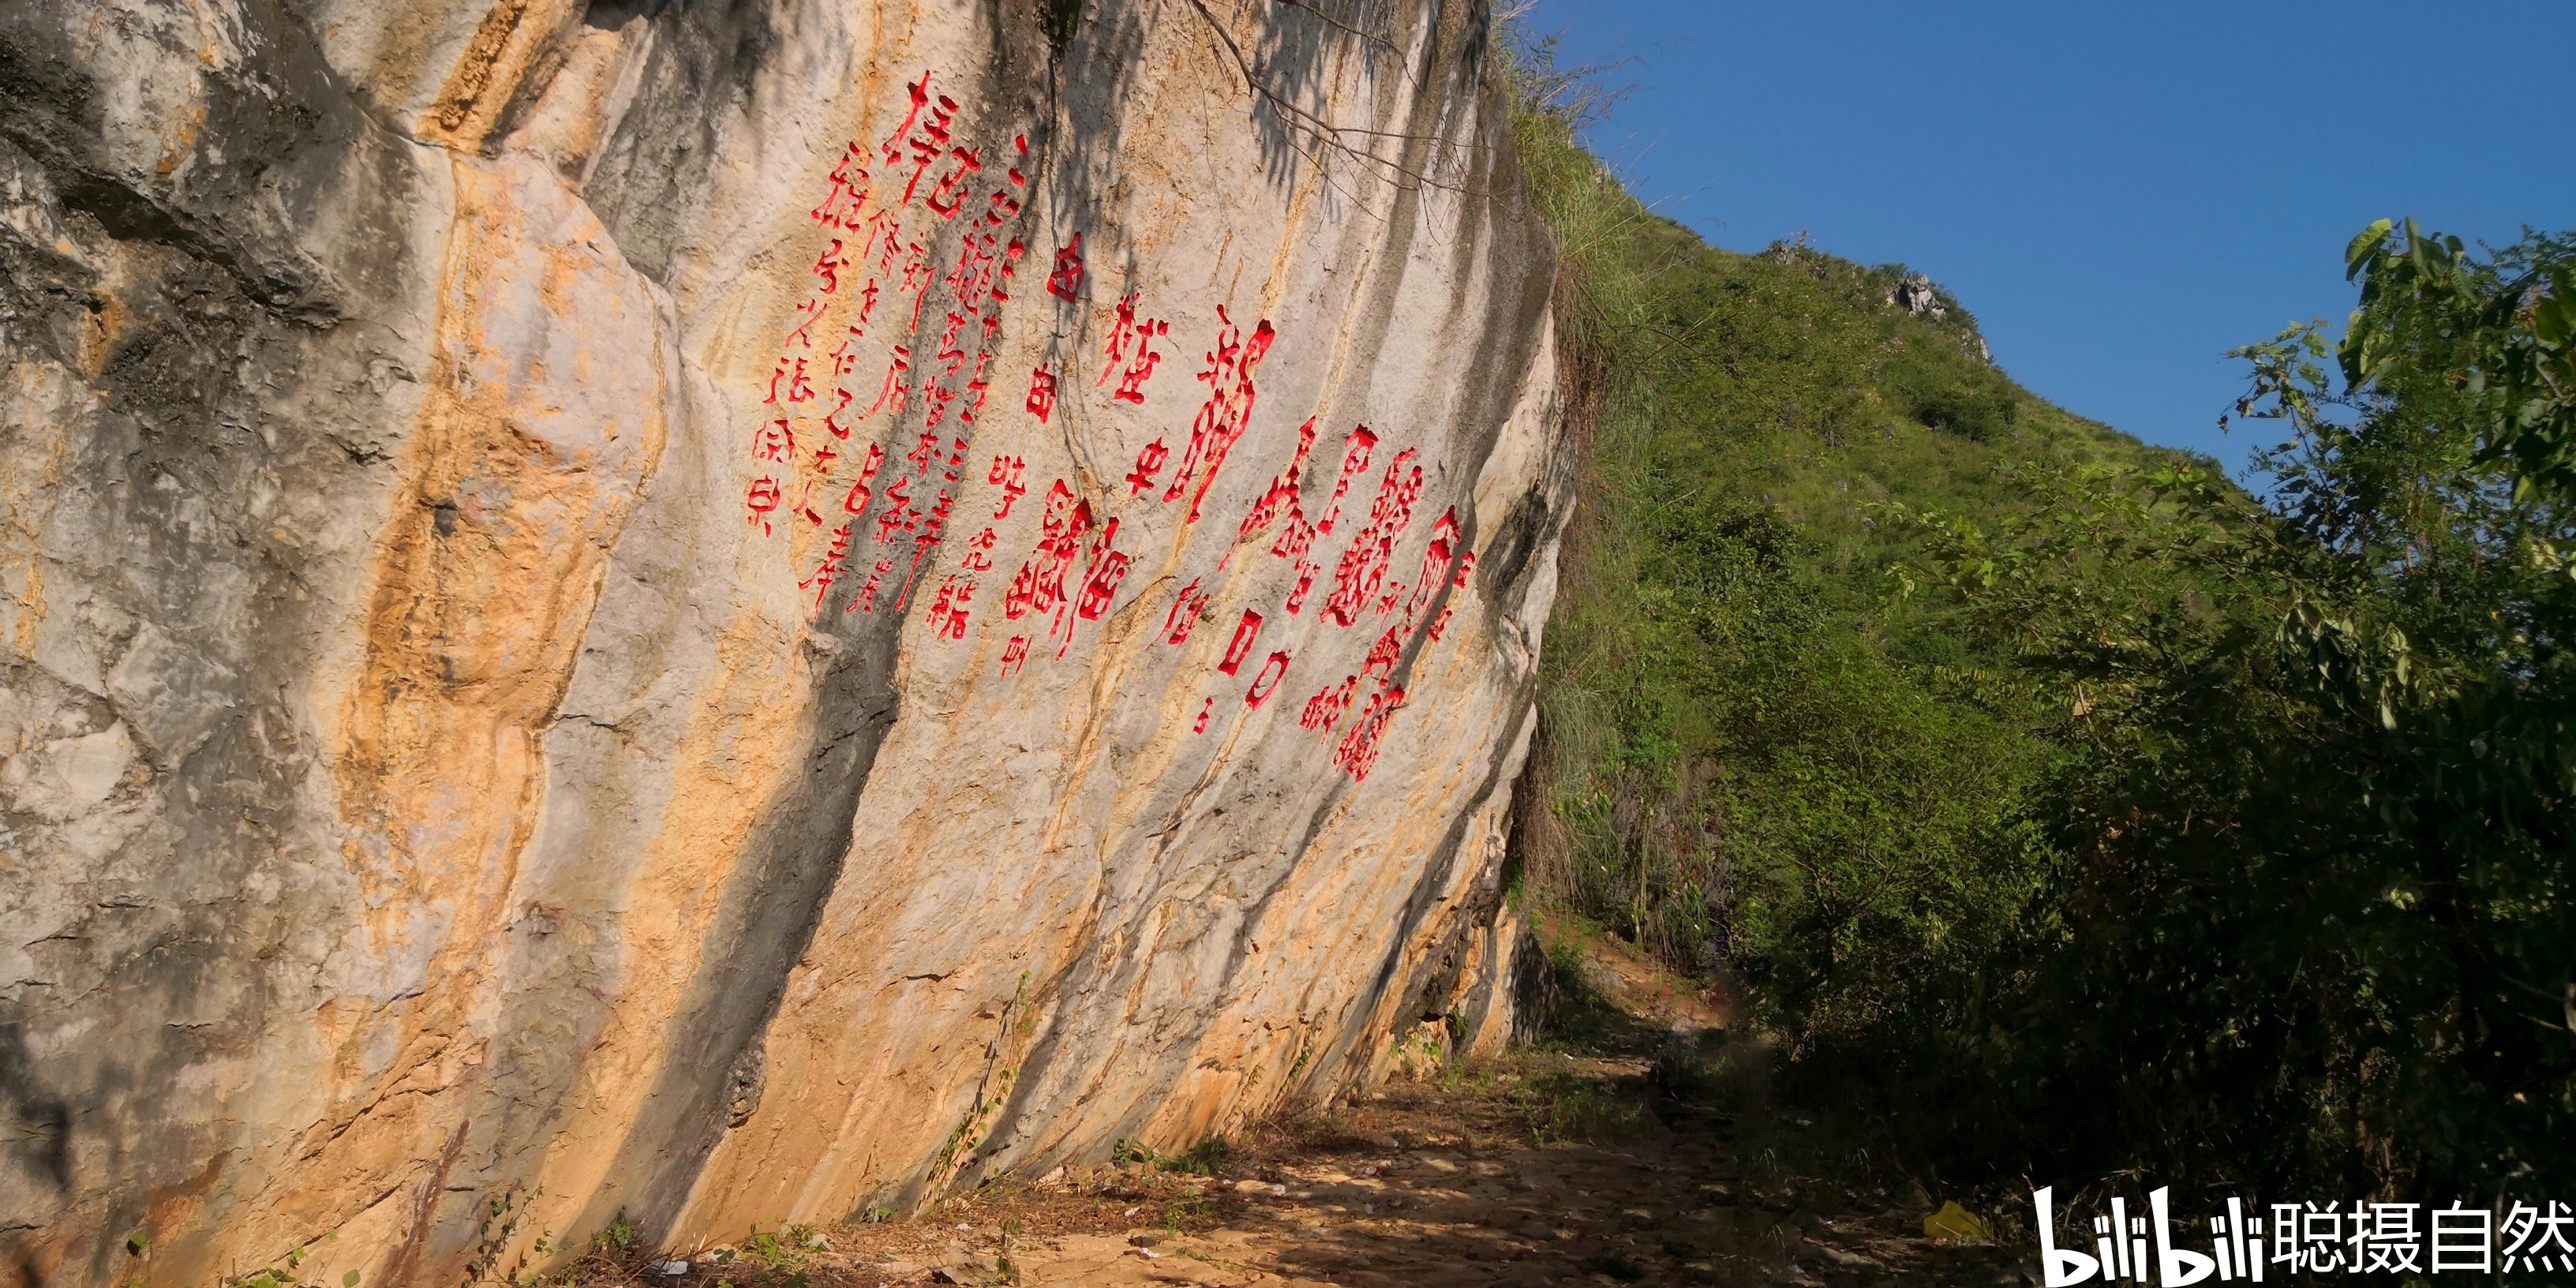 探访贵州关岭县晒甲山上神秘的红崖天书